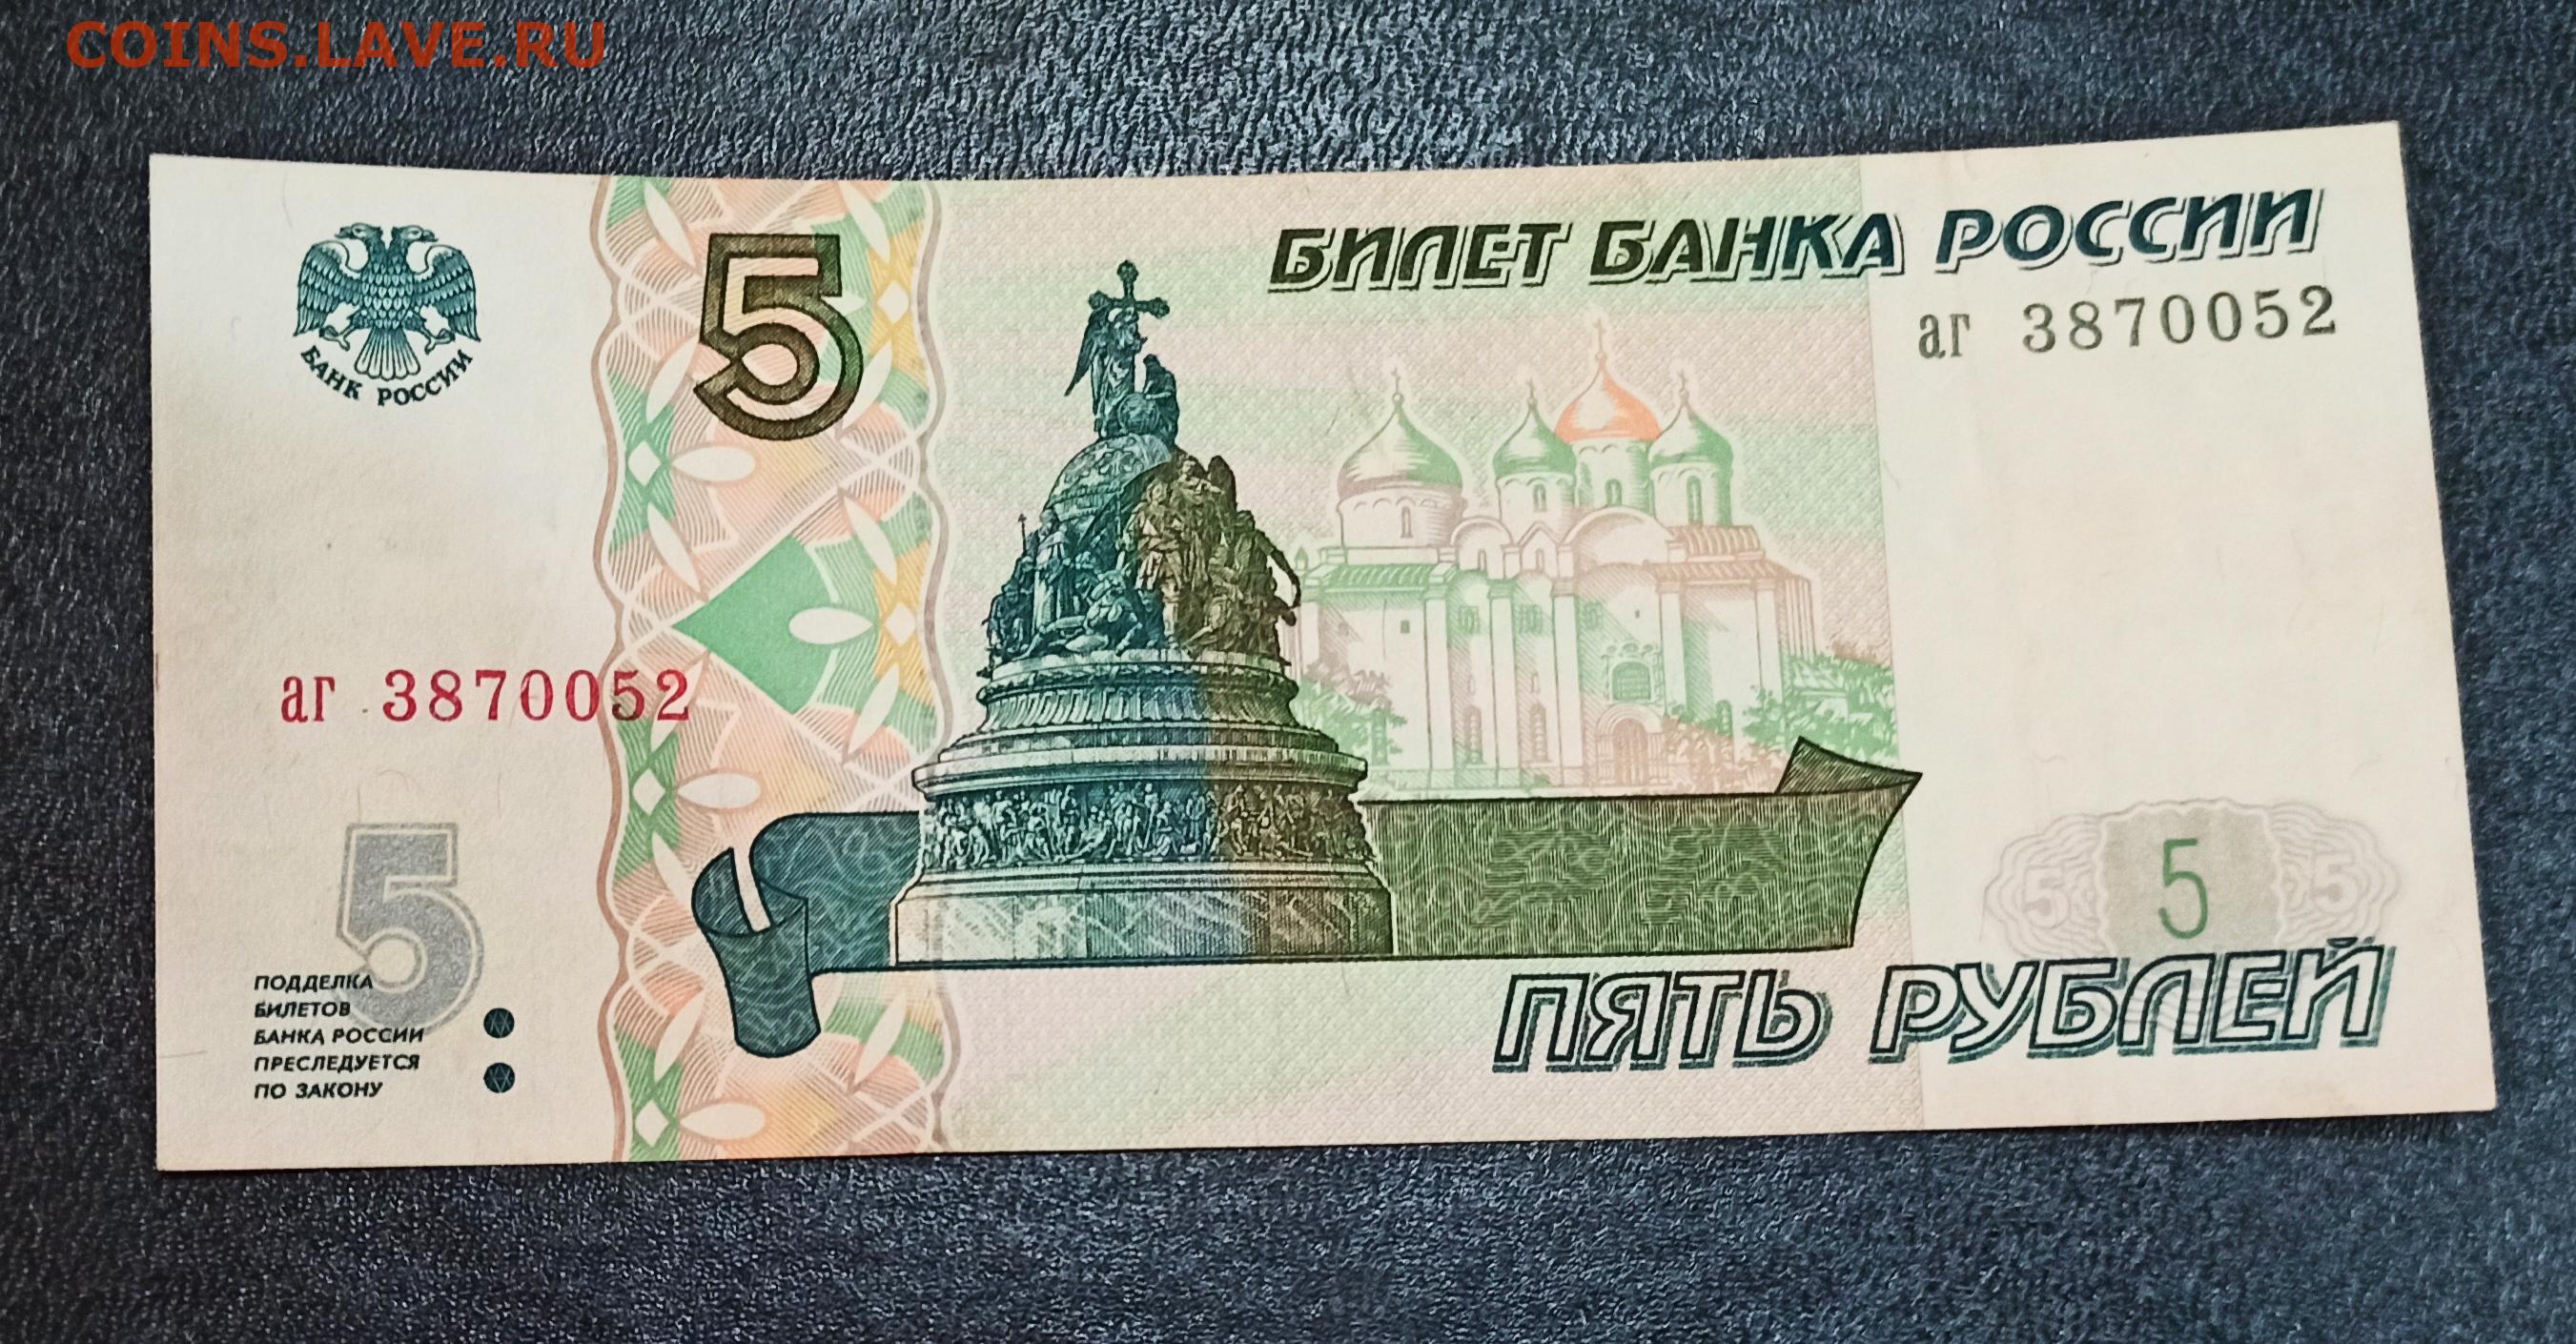 5 Рублей 1998 бумажные. Российские 5 рублей бумажные. Банкнота 5 рублей. Пять рублей купюра. Российские рубли 1997 года